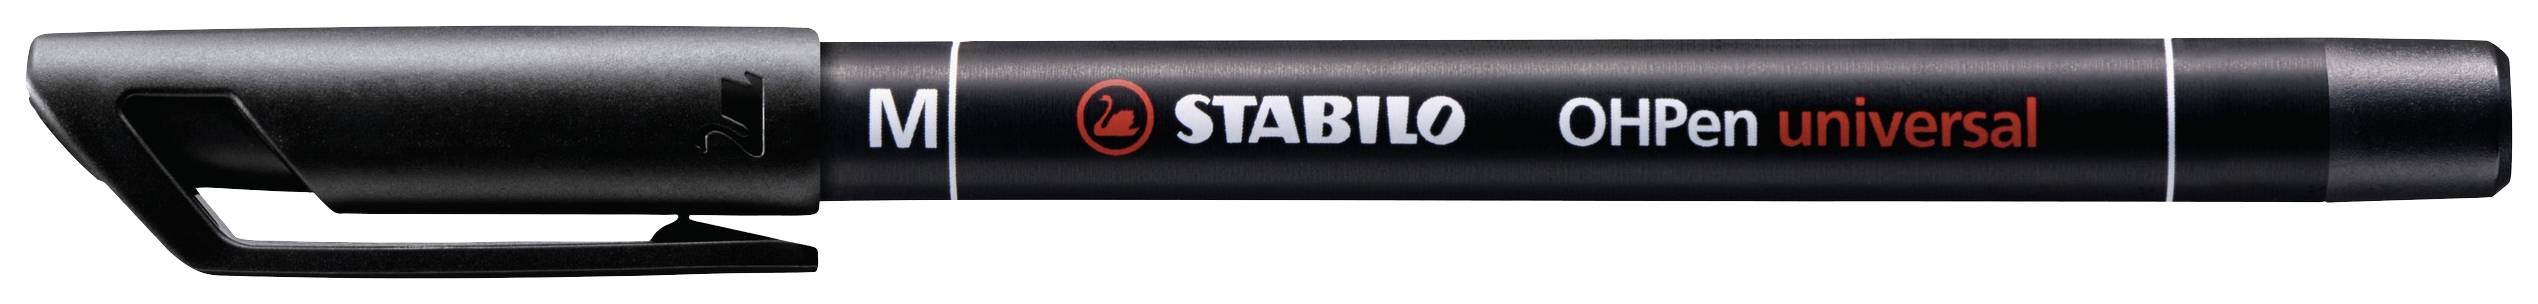 STABILO Folienstift OHPen universal, permanent, schwarz Strichstärke: 1,0 mm / M, rutschfeste Griffz